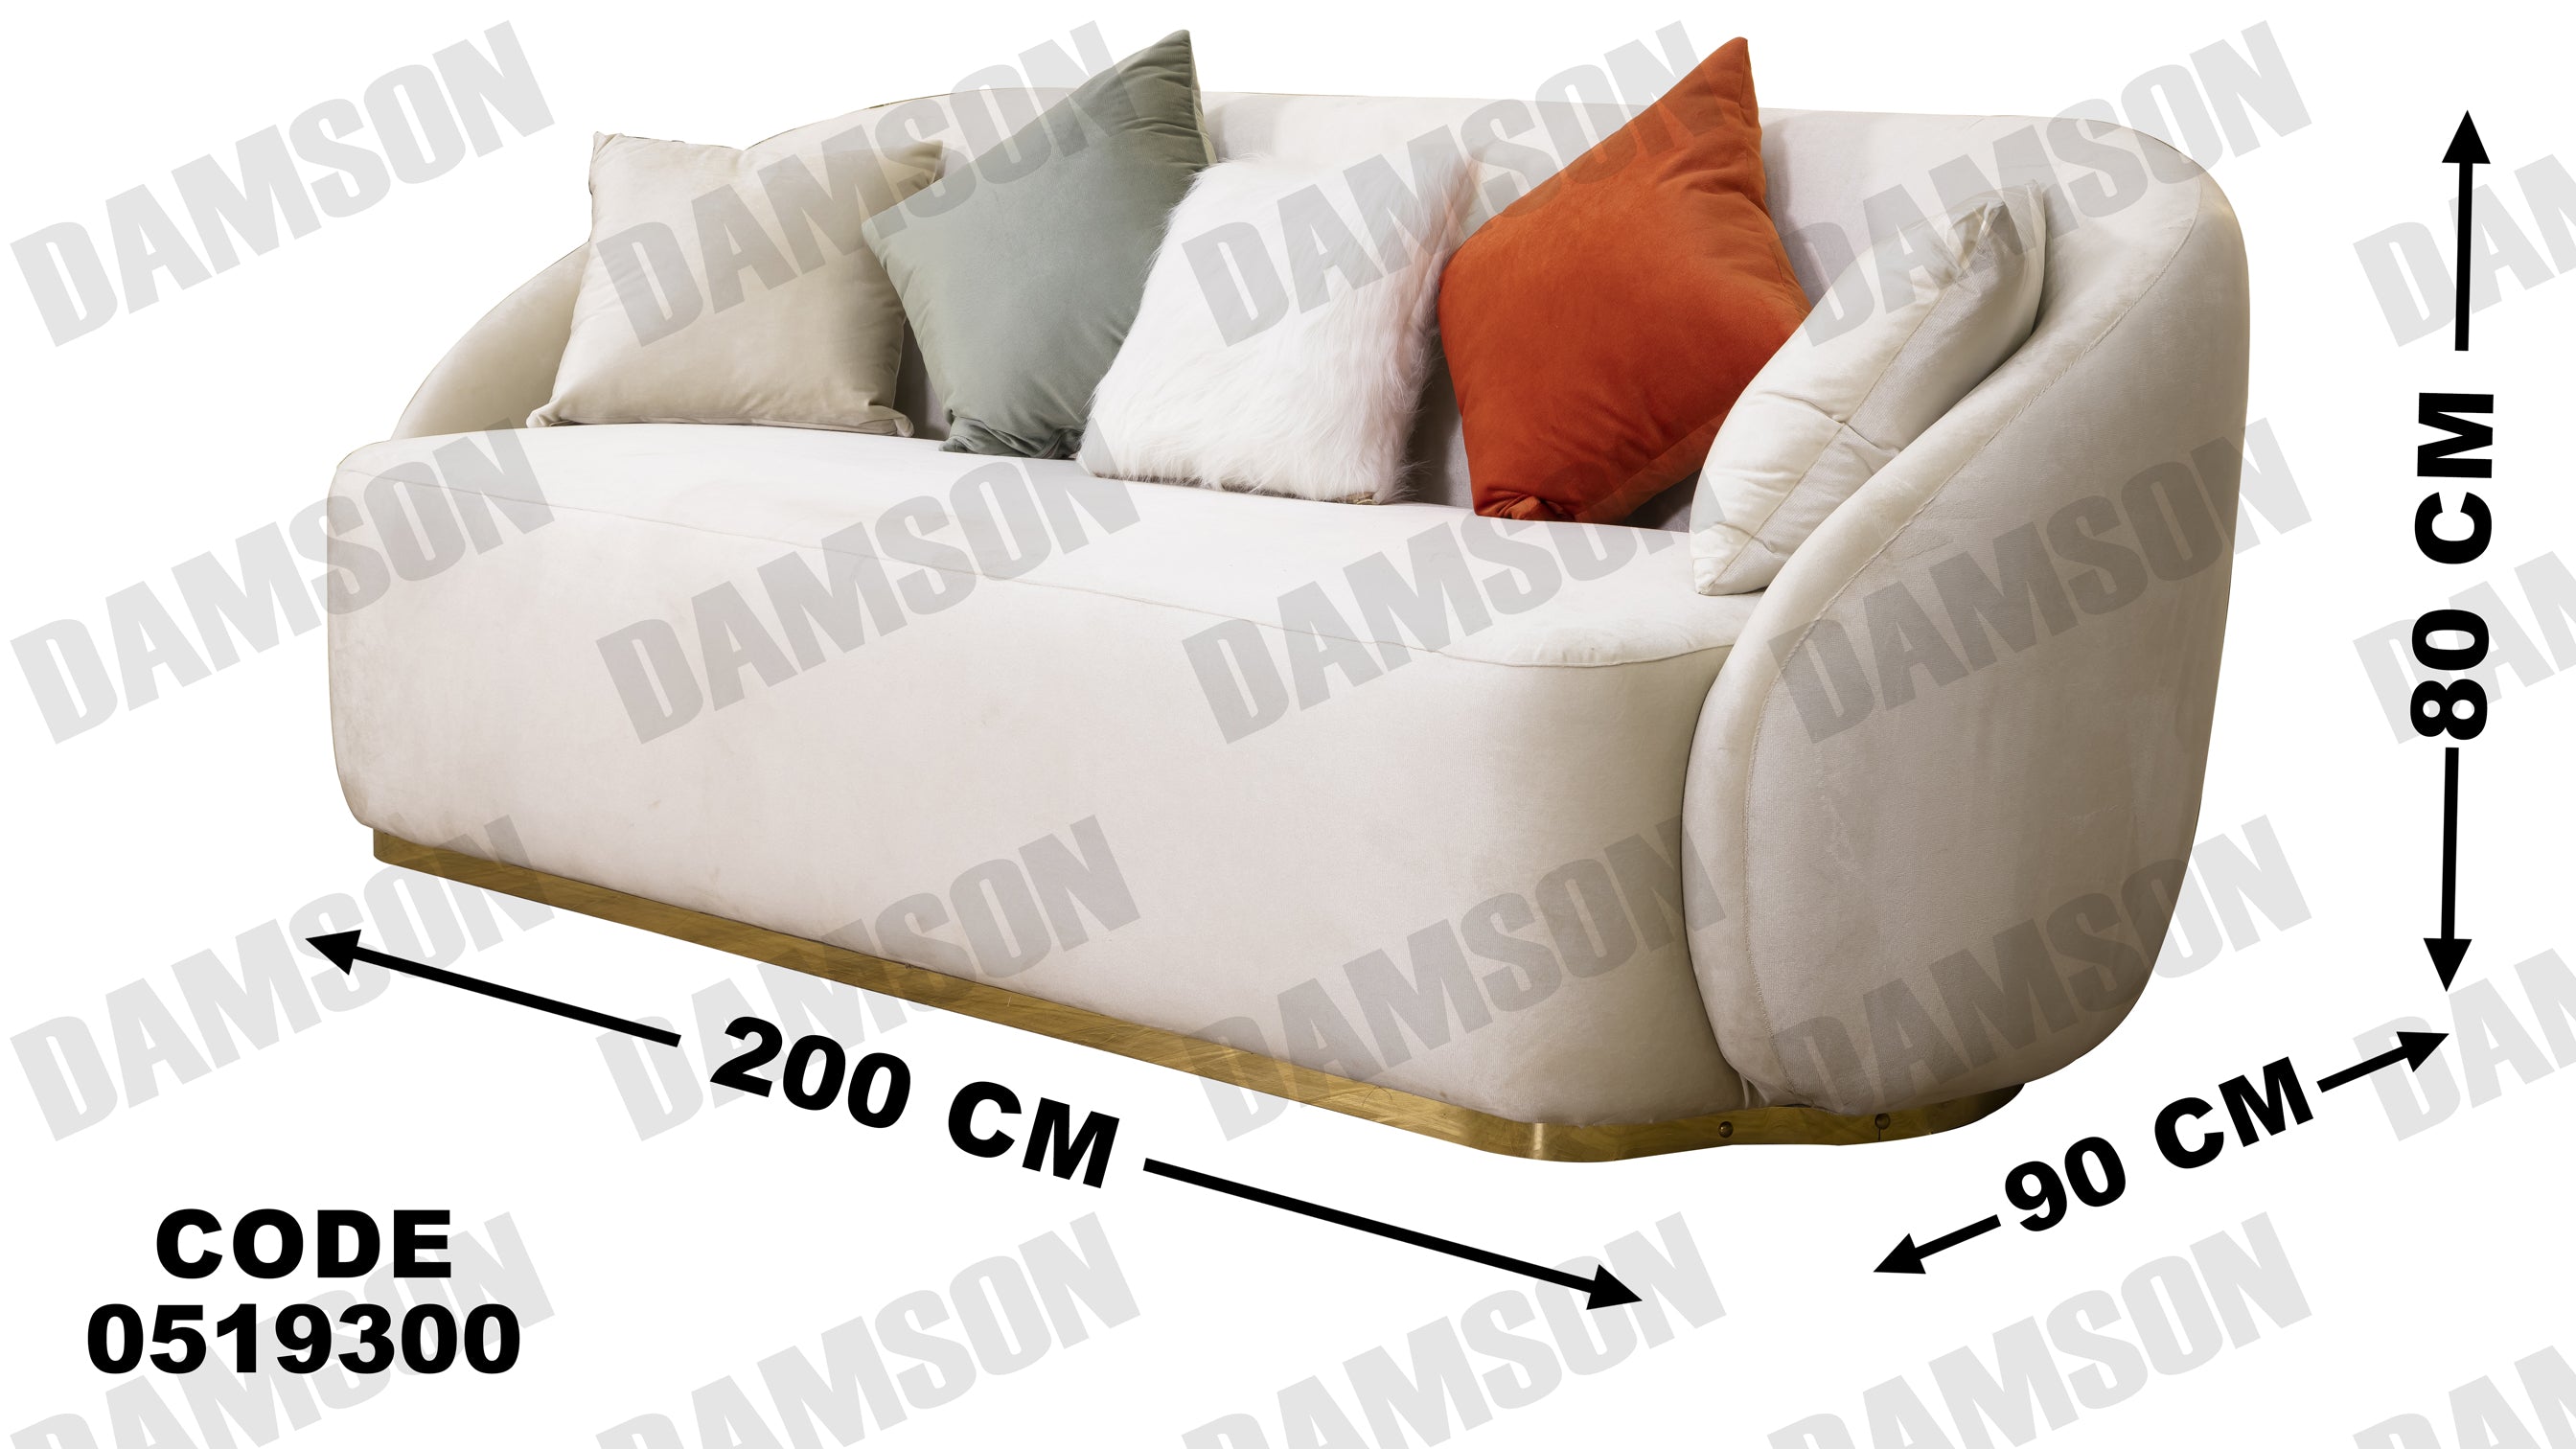 انترية 193 - Damson Furnitureانترية 193